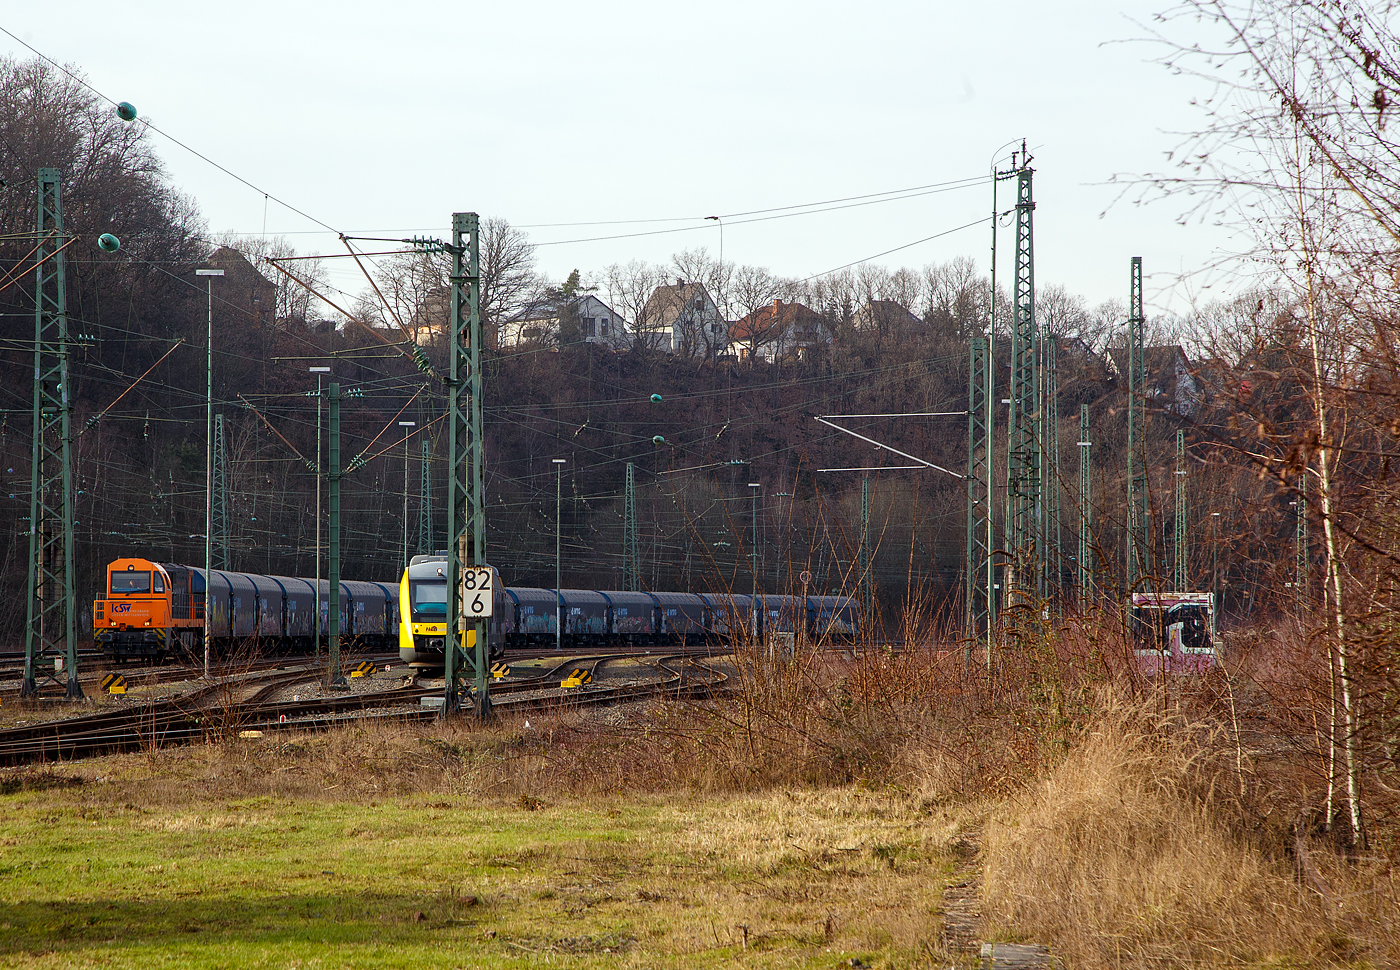 Die KSW 43 (92 80 1273 018-2 D-KSW), die asymmetrische Vossloh G 2000 BB der KSW (Kreisbahn Siegen-Wittgenstein) hat am 09.02.2023, mit ihrem Coilzug (VTG Coilwagen der Gattung Shimmns-ttu), den Rbf Betzdorf (Sieg) erreicht. Hier muss sie erst auf den Regionalverkehr warten, was ich nicht ganz verstehe, bevor es über Siegen, Dillenburg und Haiger nach Herdorf, was einem Umweg von über 62 km bedeutet.